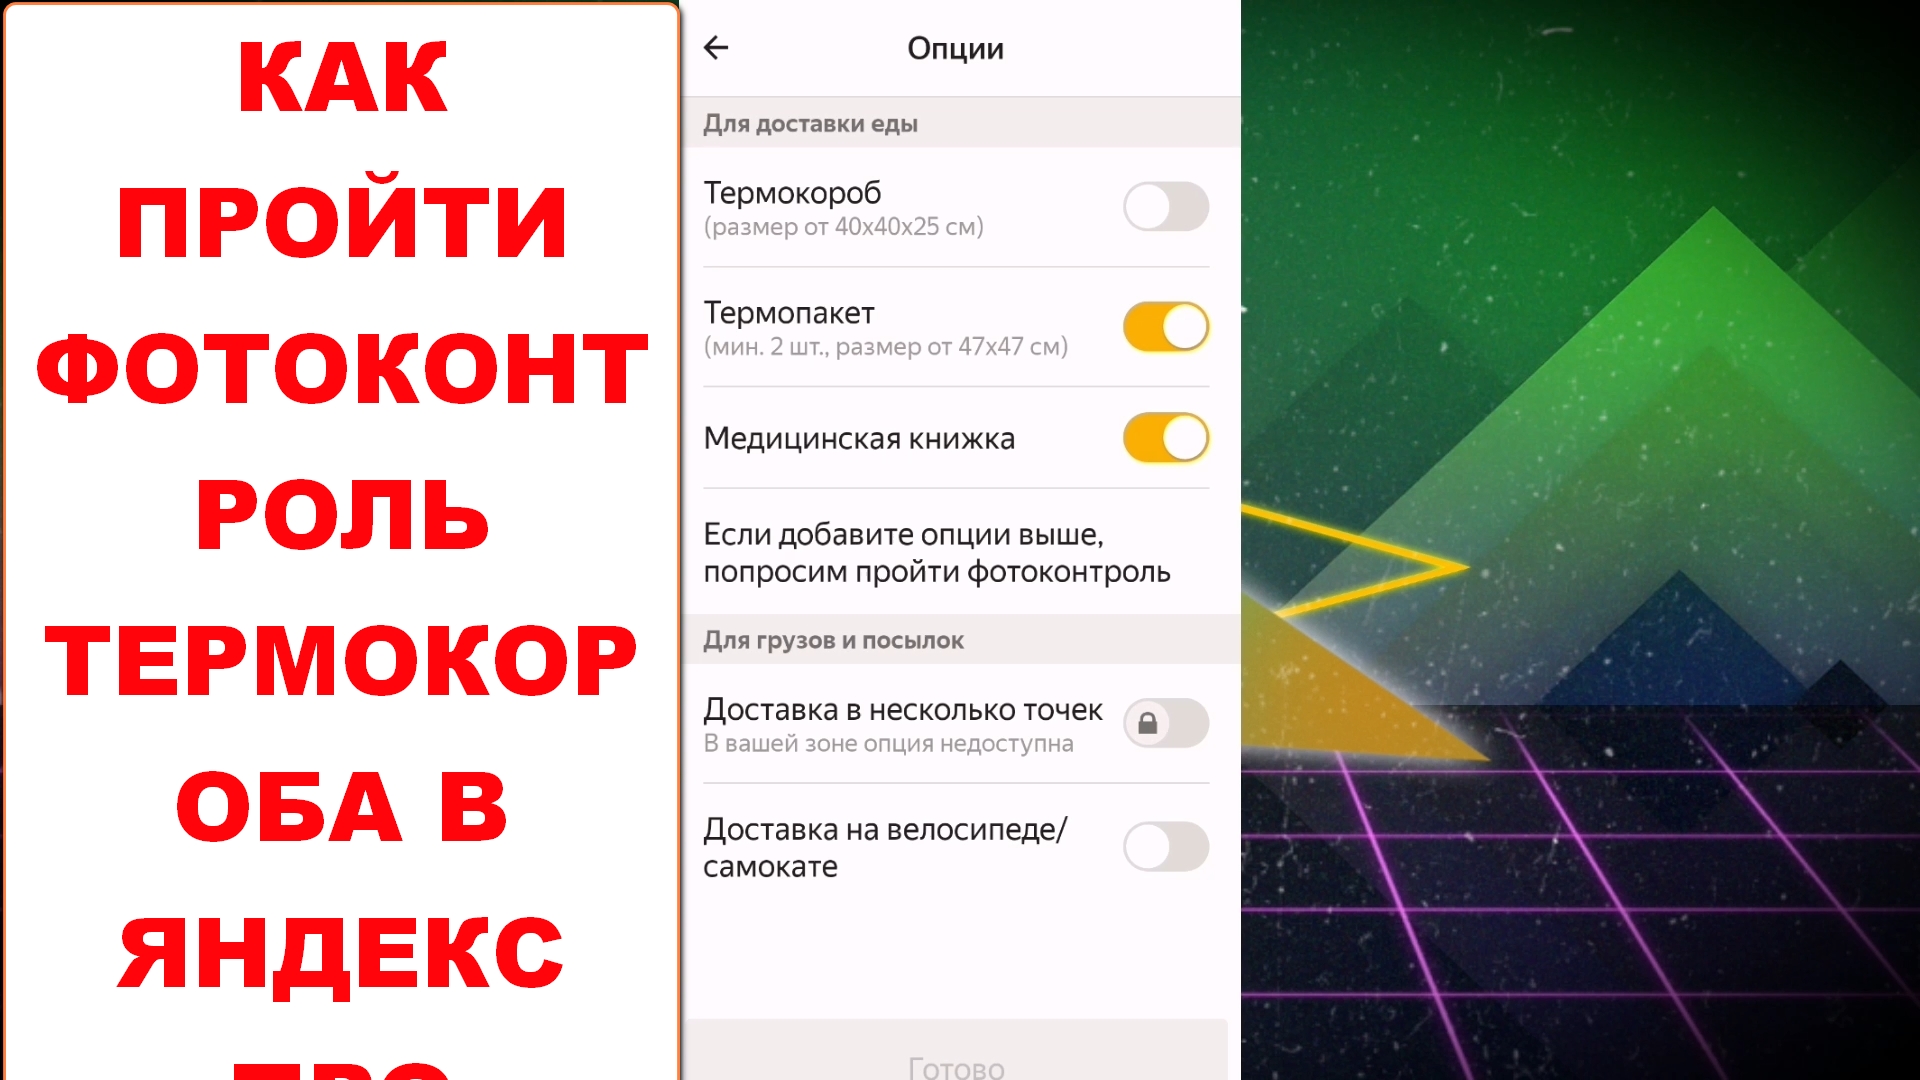 Фотоконтроль термокороба Яндекс